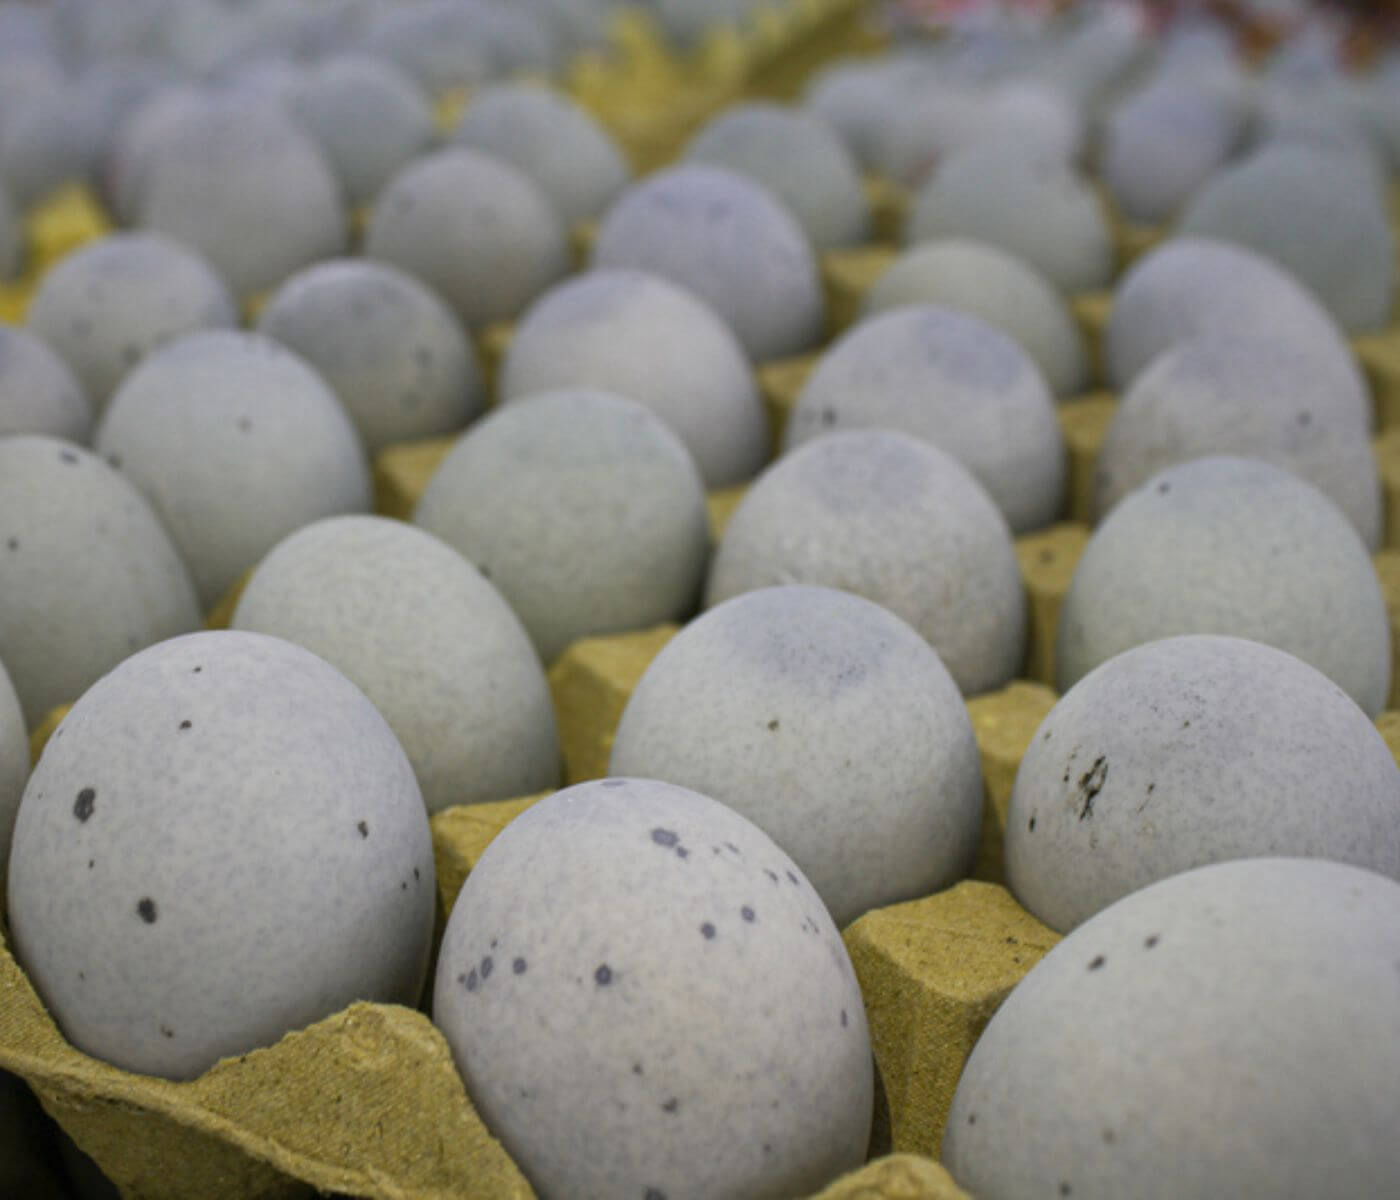 أسعار بيض البط في تايوان ترتفع والسبب نقص في بيض المائدة المتوفر